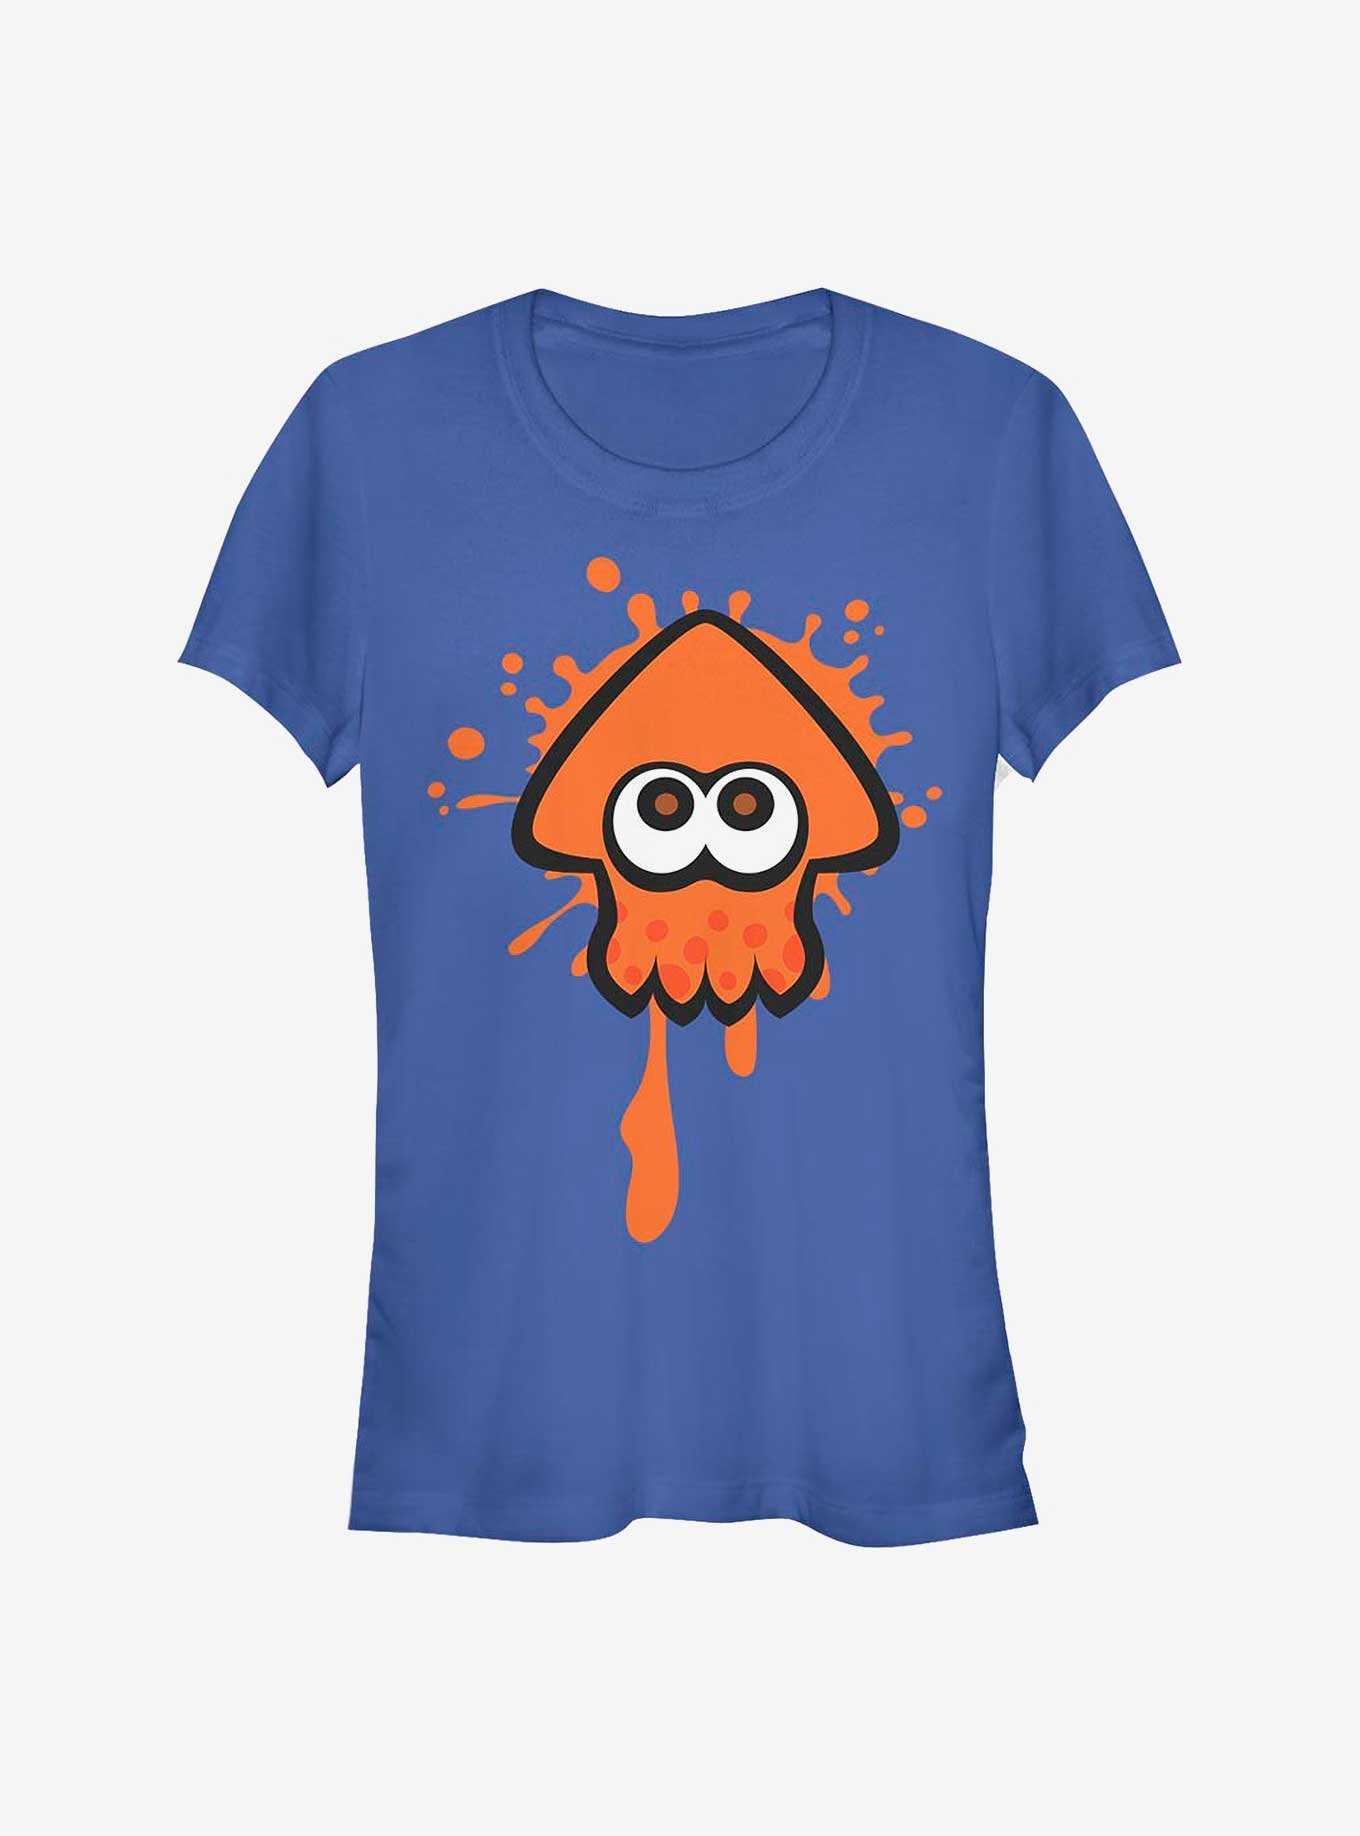 Nintendo Splatoon Orange Inkling Girls T-Shirt, , hi-res